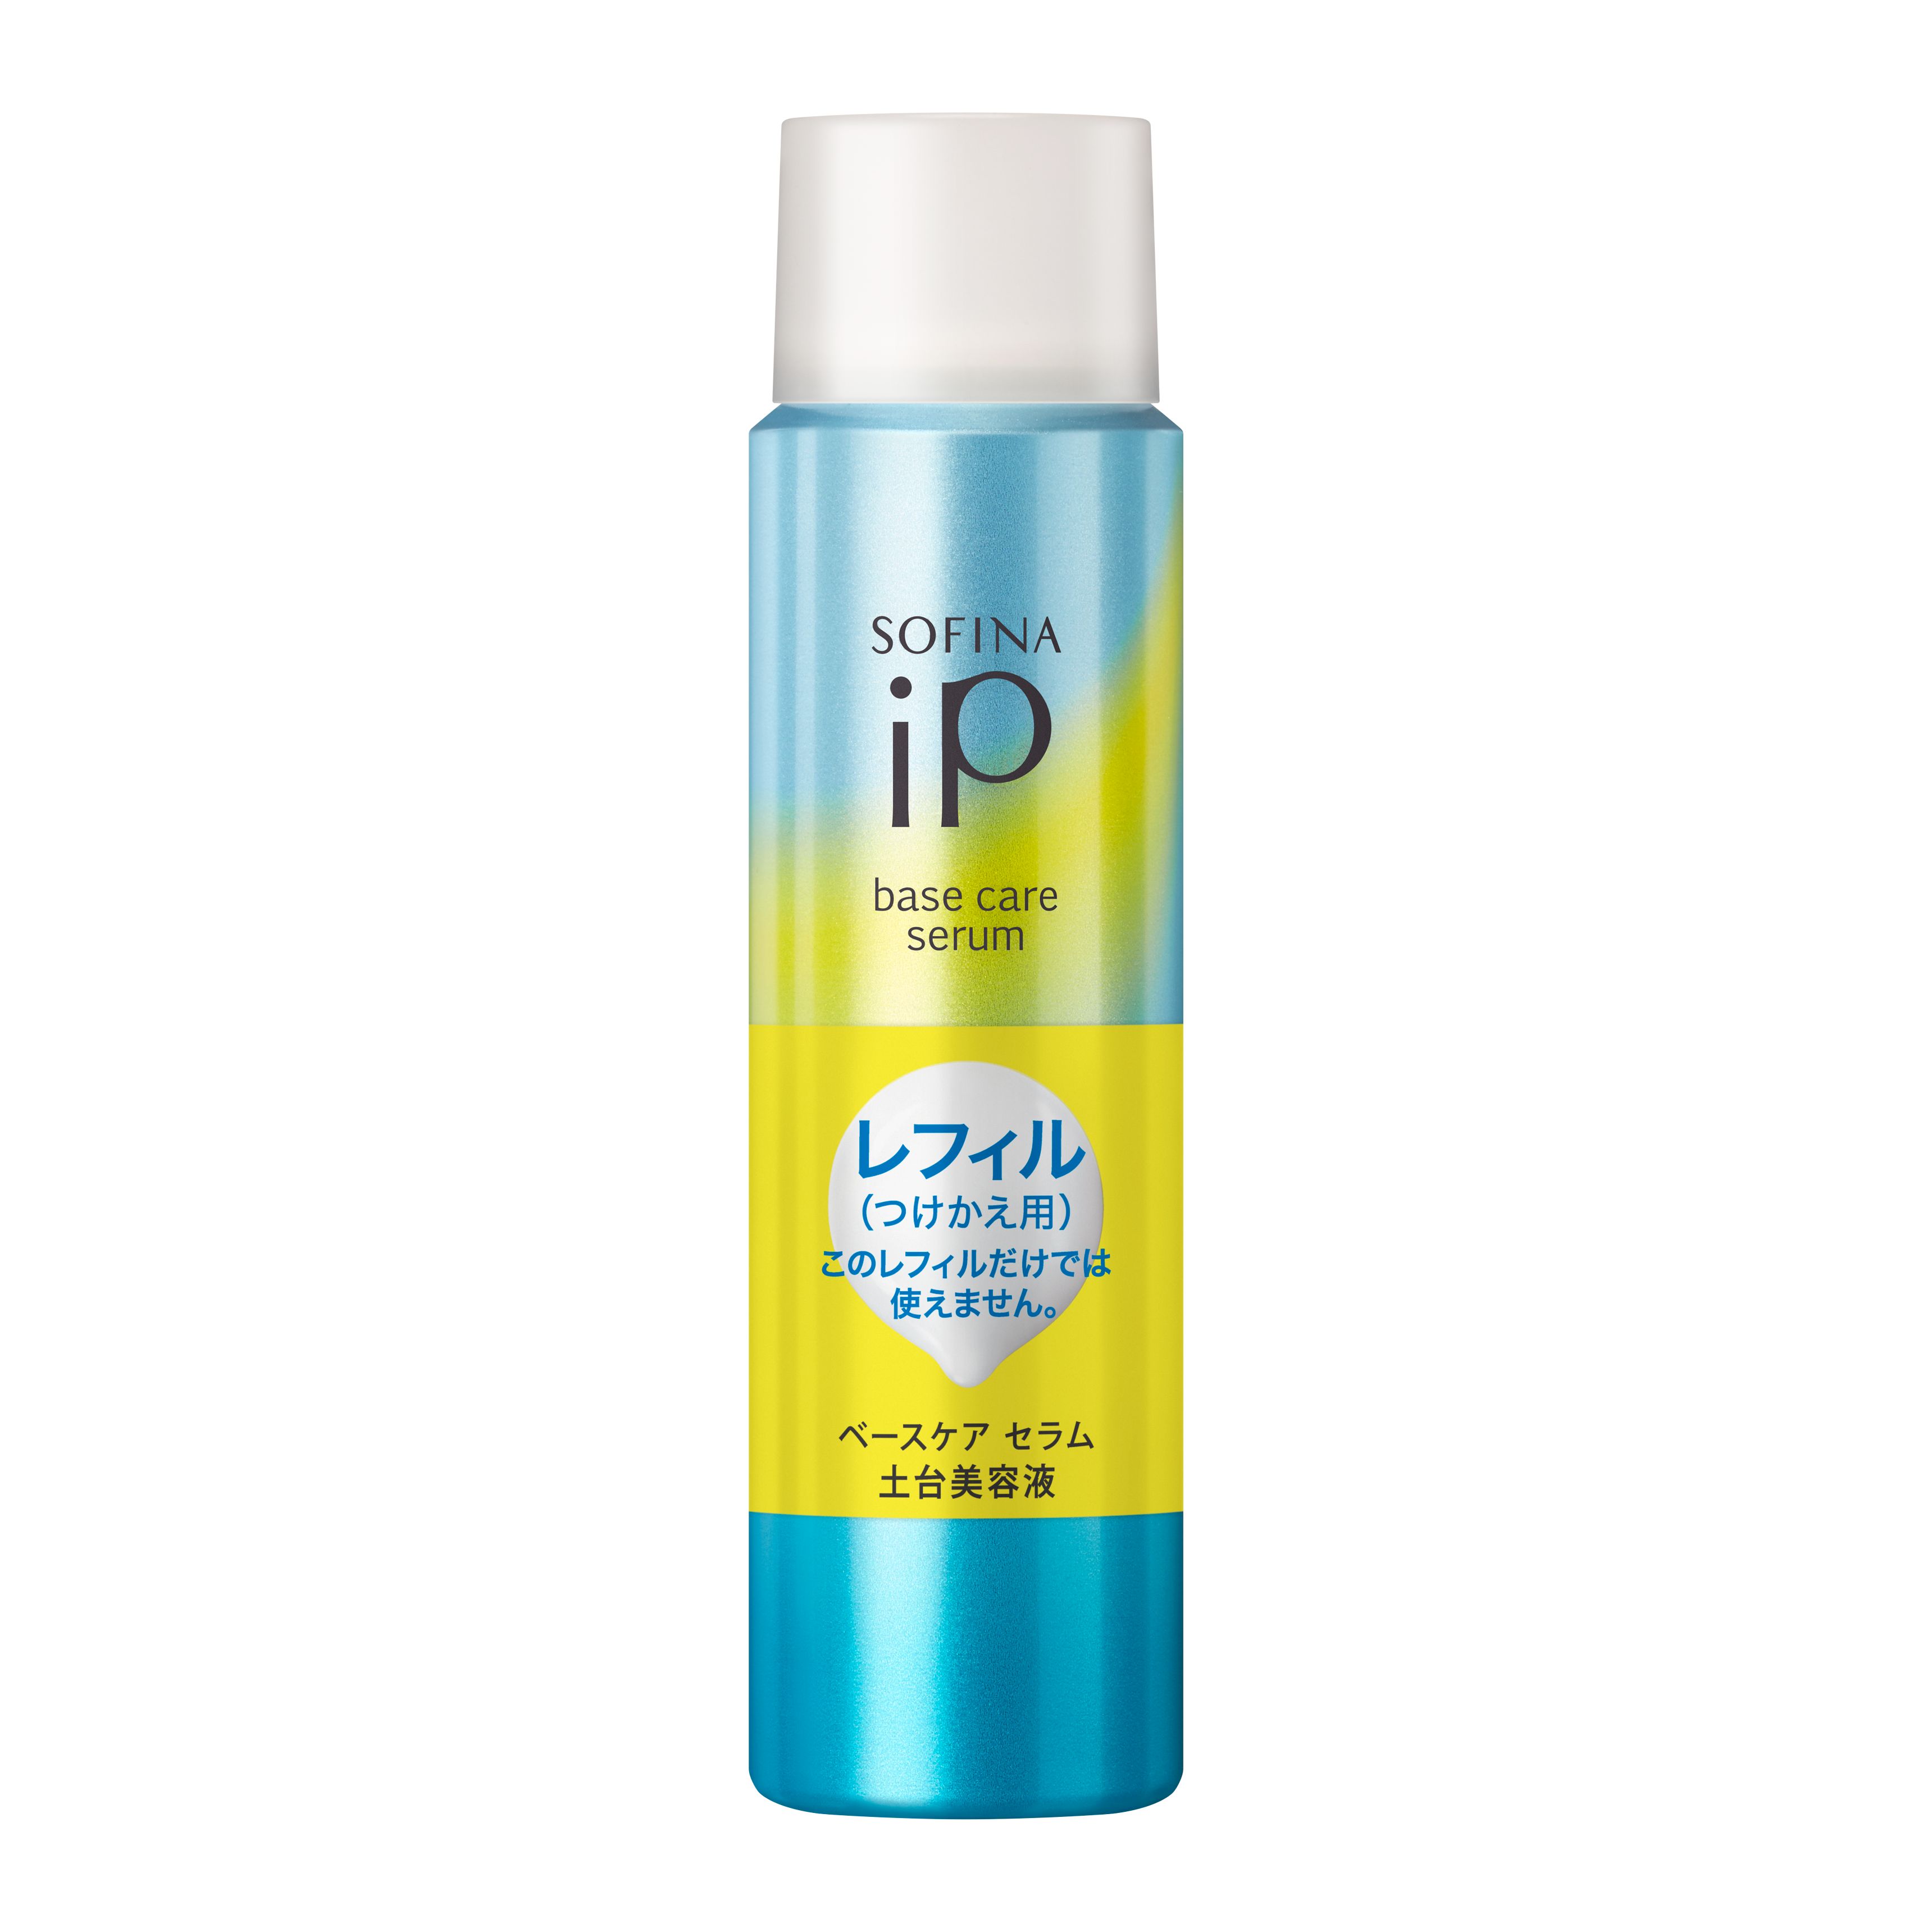 スキンケア基礎化粧品ソフィーナ iP ベースケア セラム 土台美容液 レフィル(180g)